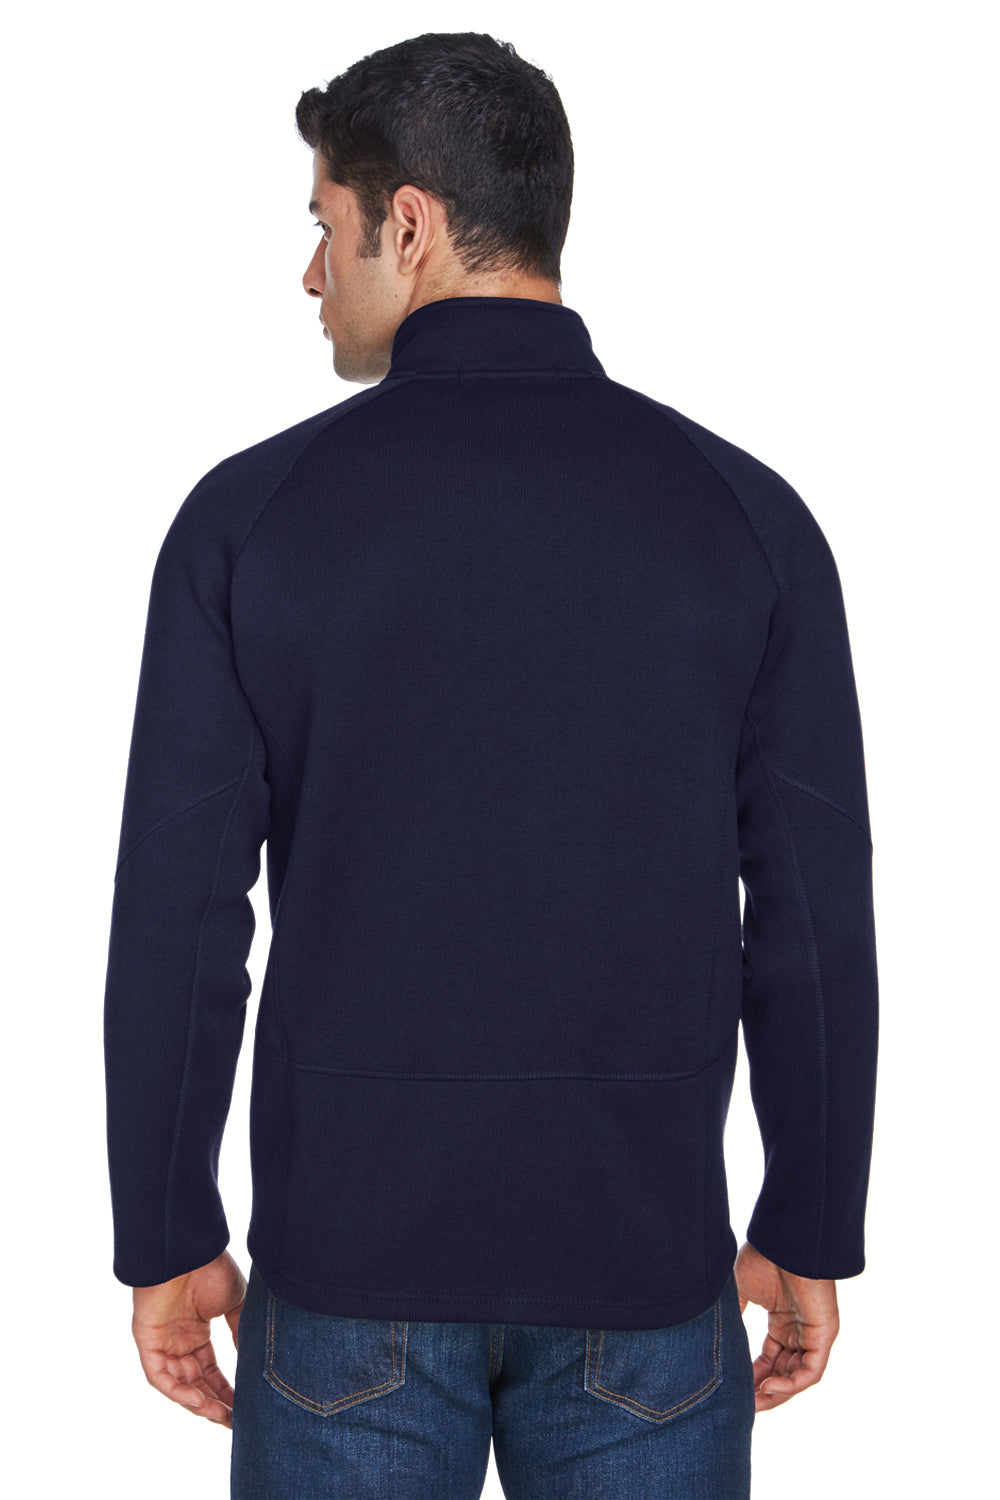 Devon & Jones DG792 Mens Bristol Sweater Fleece 1/4 Zip Sweatshirt Navy Blue Back